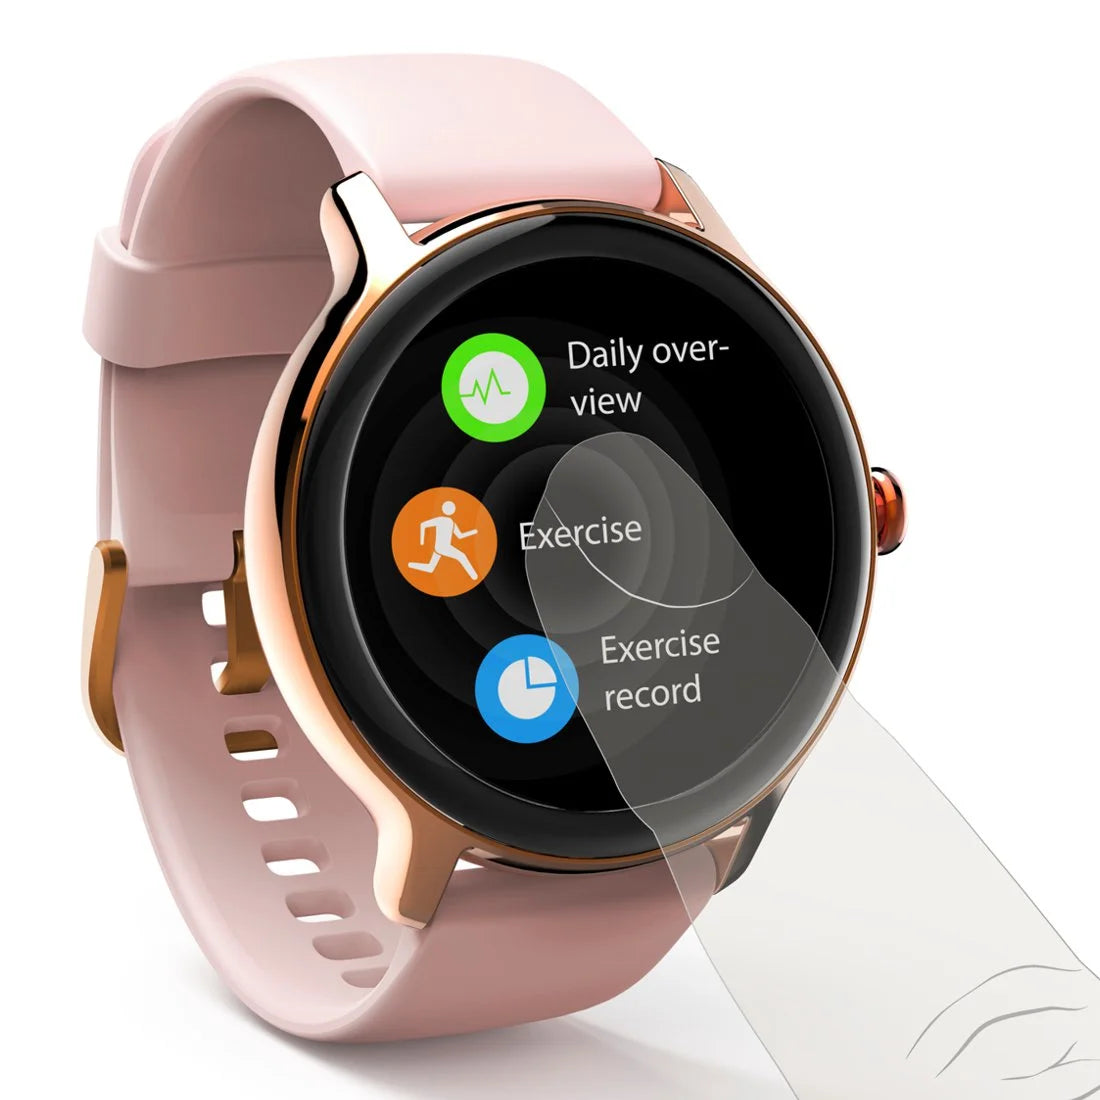 Elegancki smartwatch damski Hama Fit Watch 4910 złota ramka różowy pasek